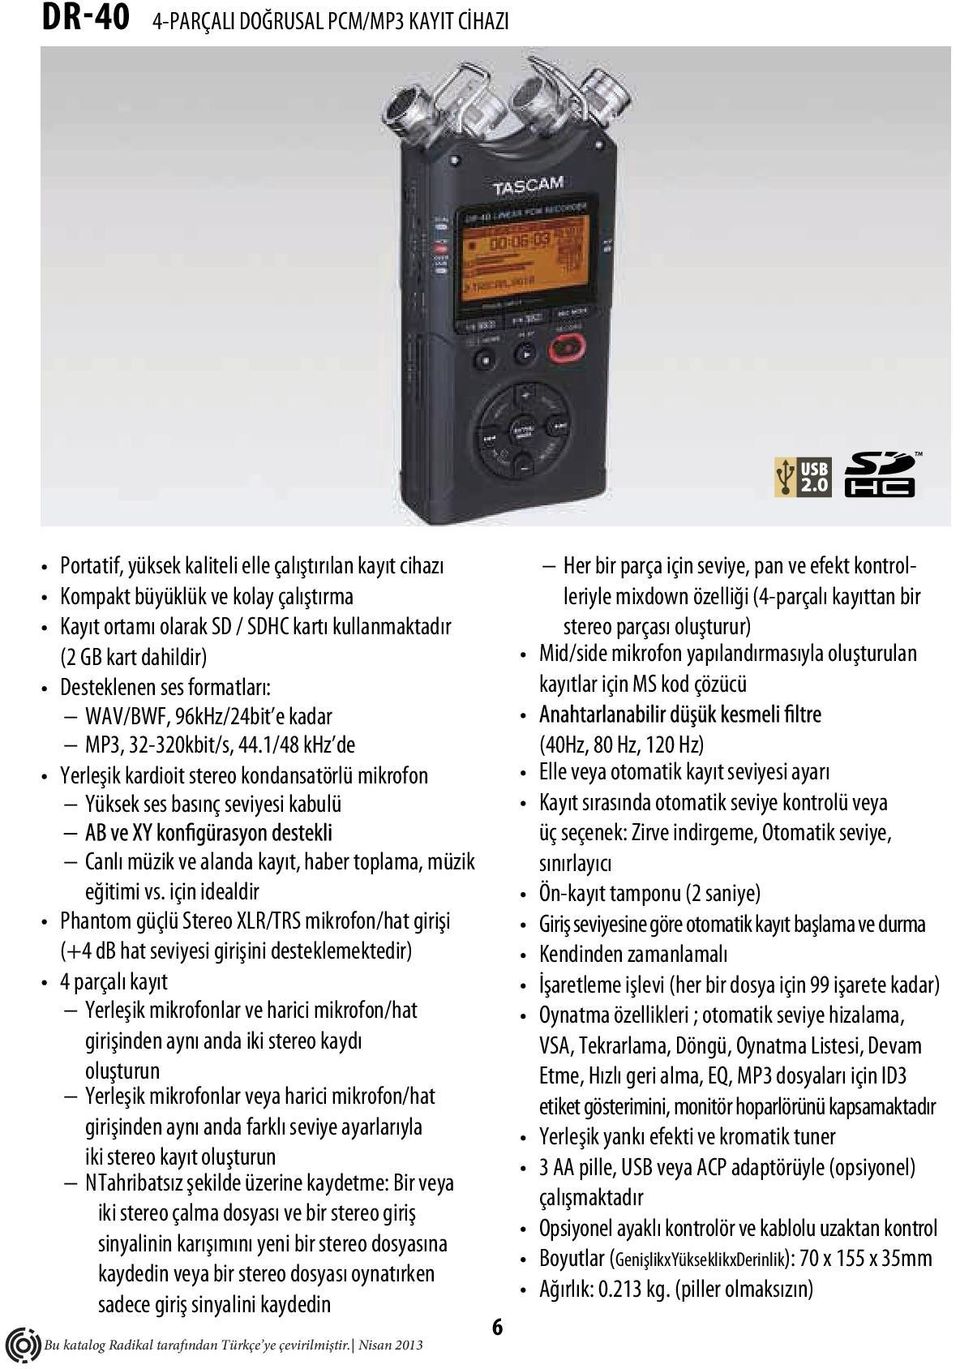 1/48 khz de Yerleşik kardioit stereo kondansatörlü mikrofon Yüksek ses basınç seviyesi kabulü Canlı müzik ve alanda kayıt, haber toplama, müzik eğitimi vs.